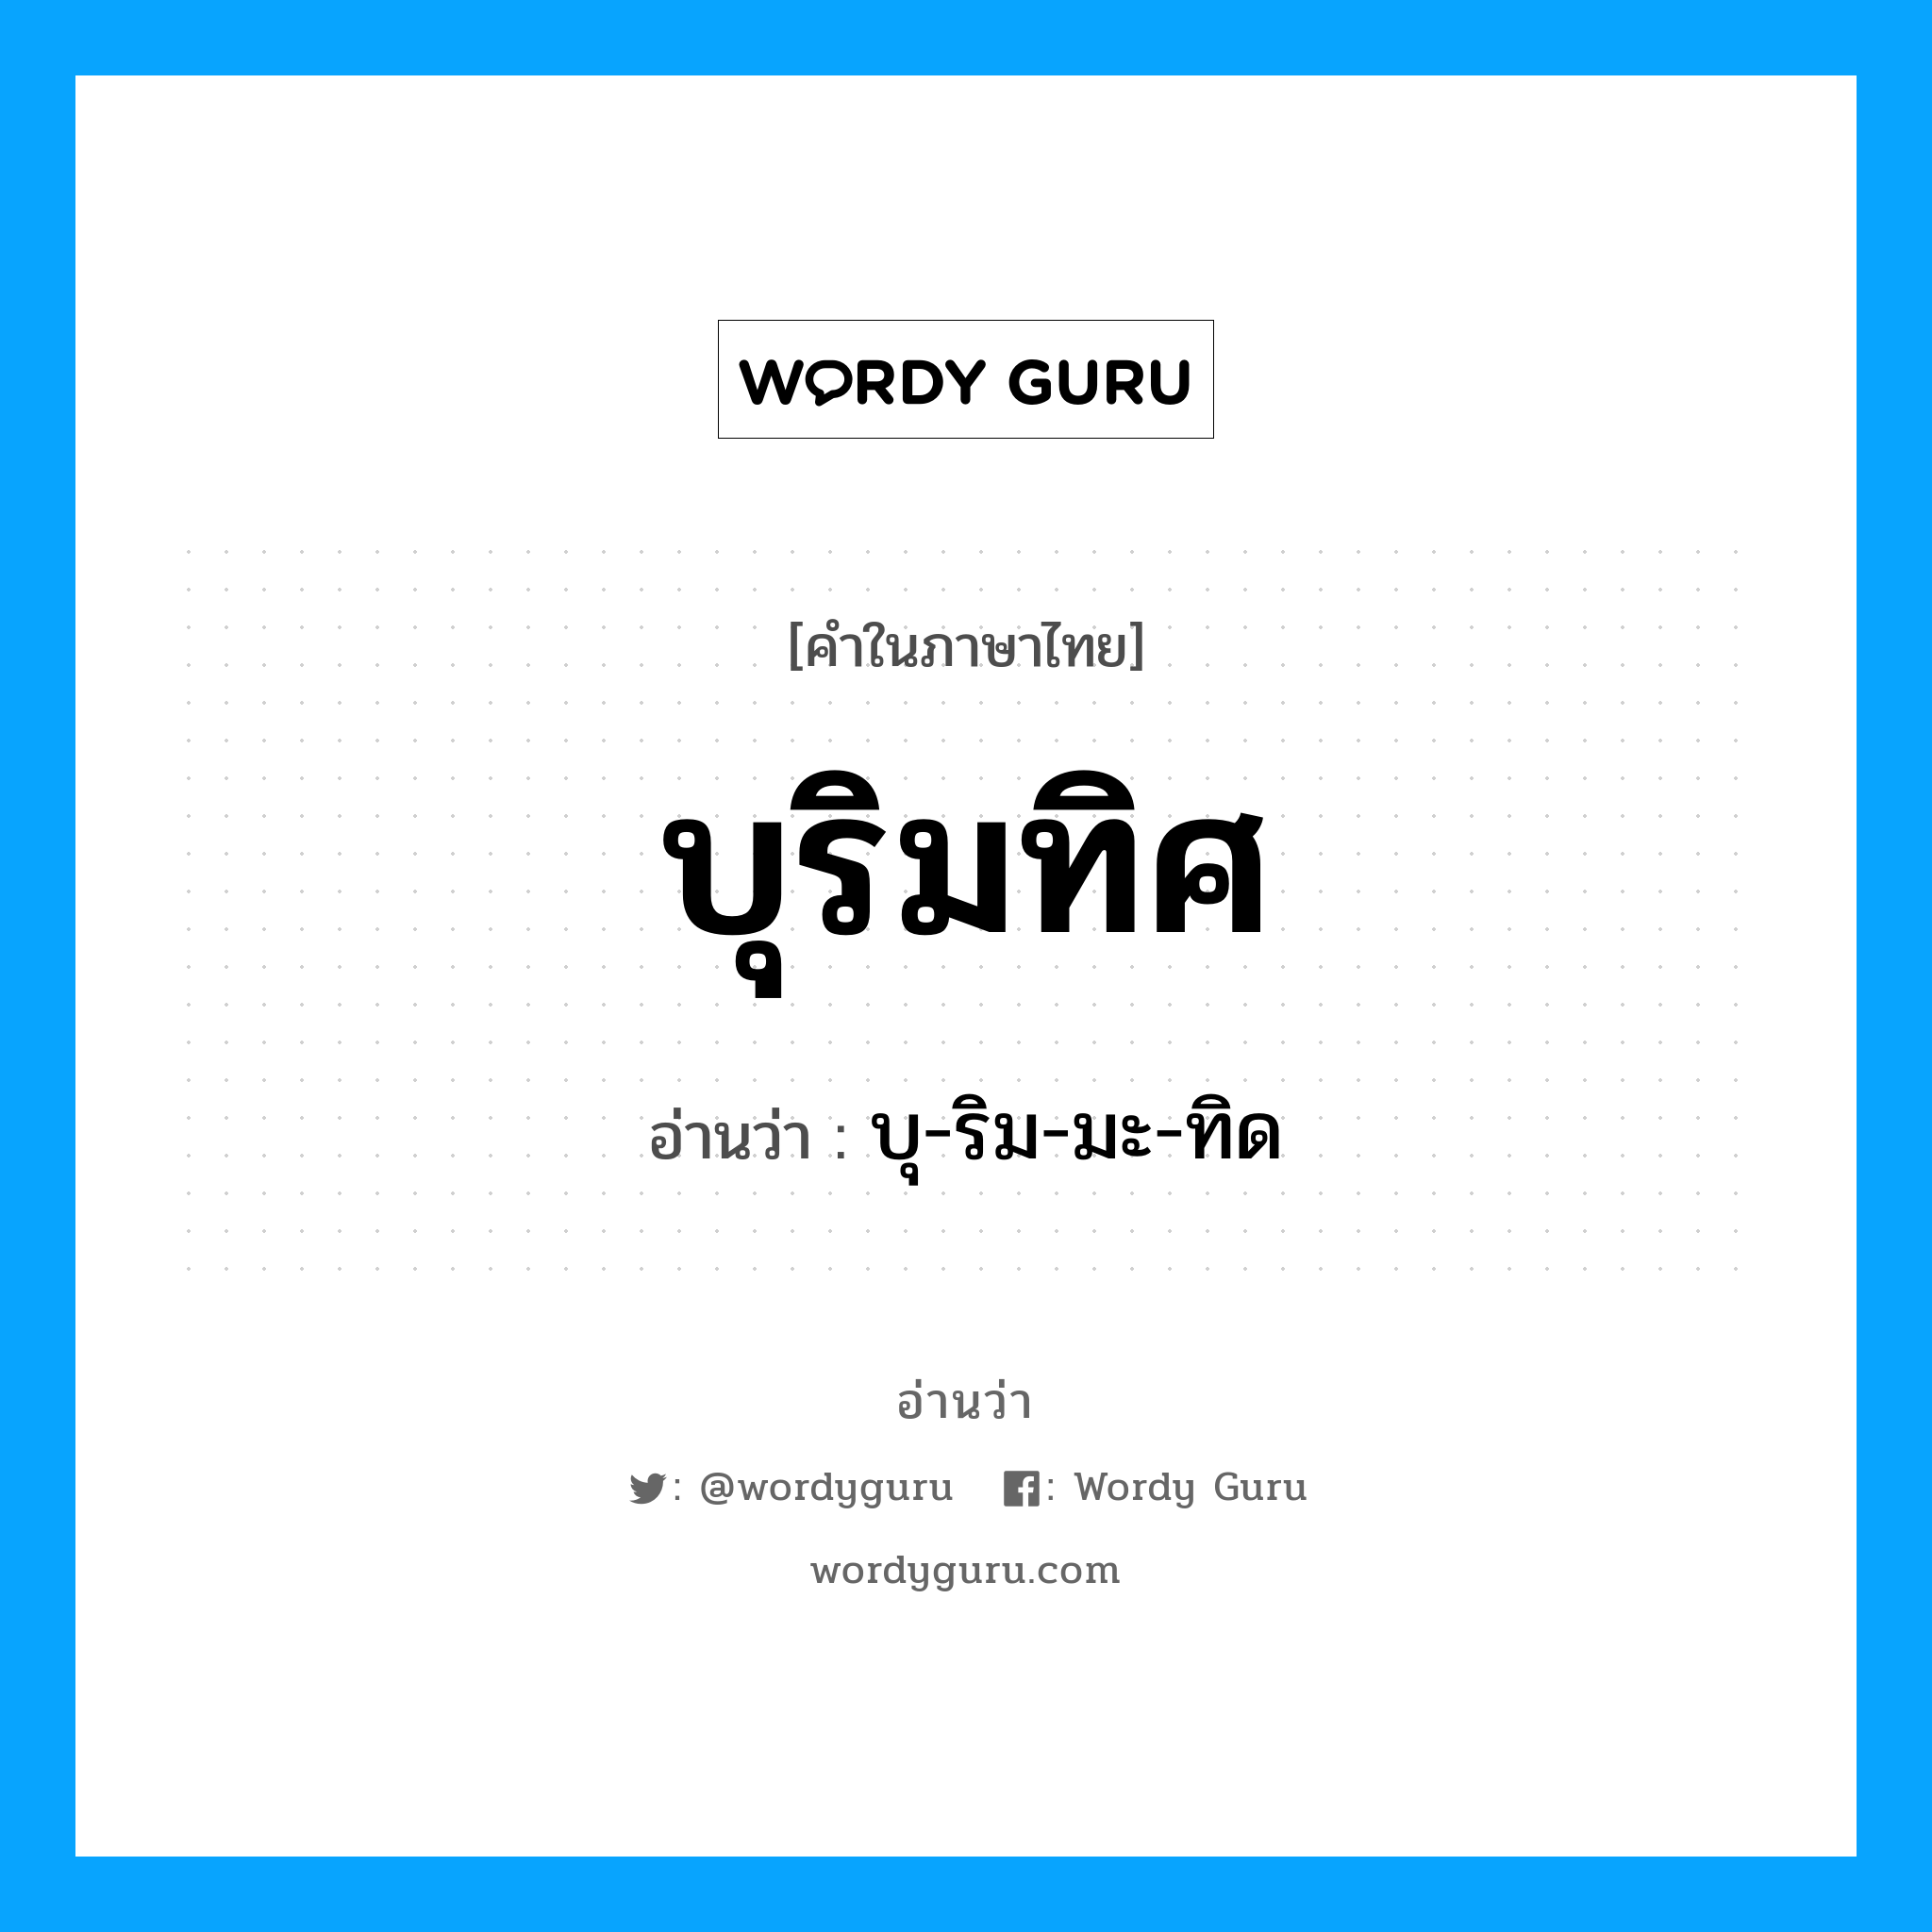 บุ-ริม-มะ-ทิด เป็นคำอ่านของคำไหน?, คำในภาษาไทย บุ-ริม-มะ-ทิด อ่านว่า บุริมทิศ